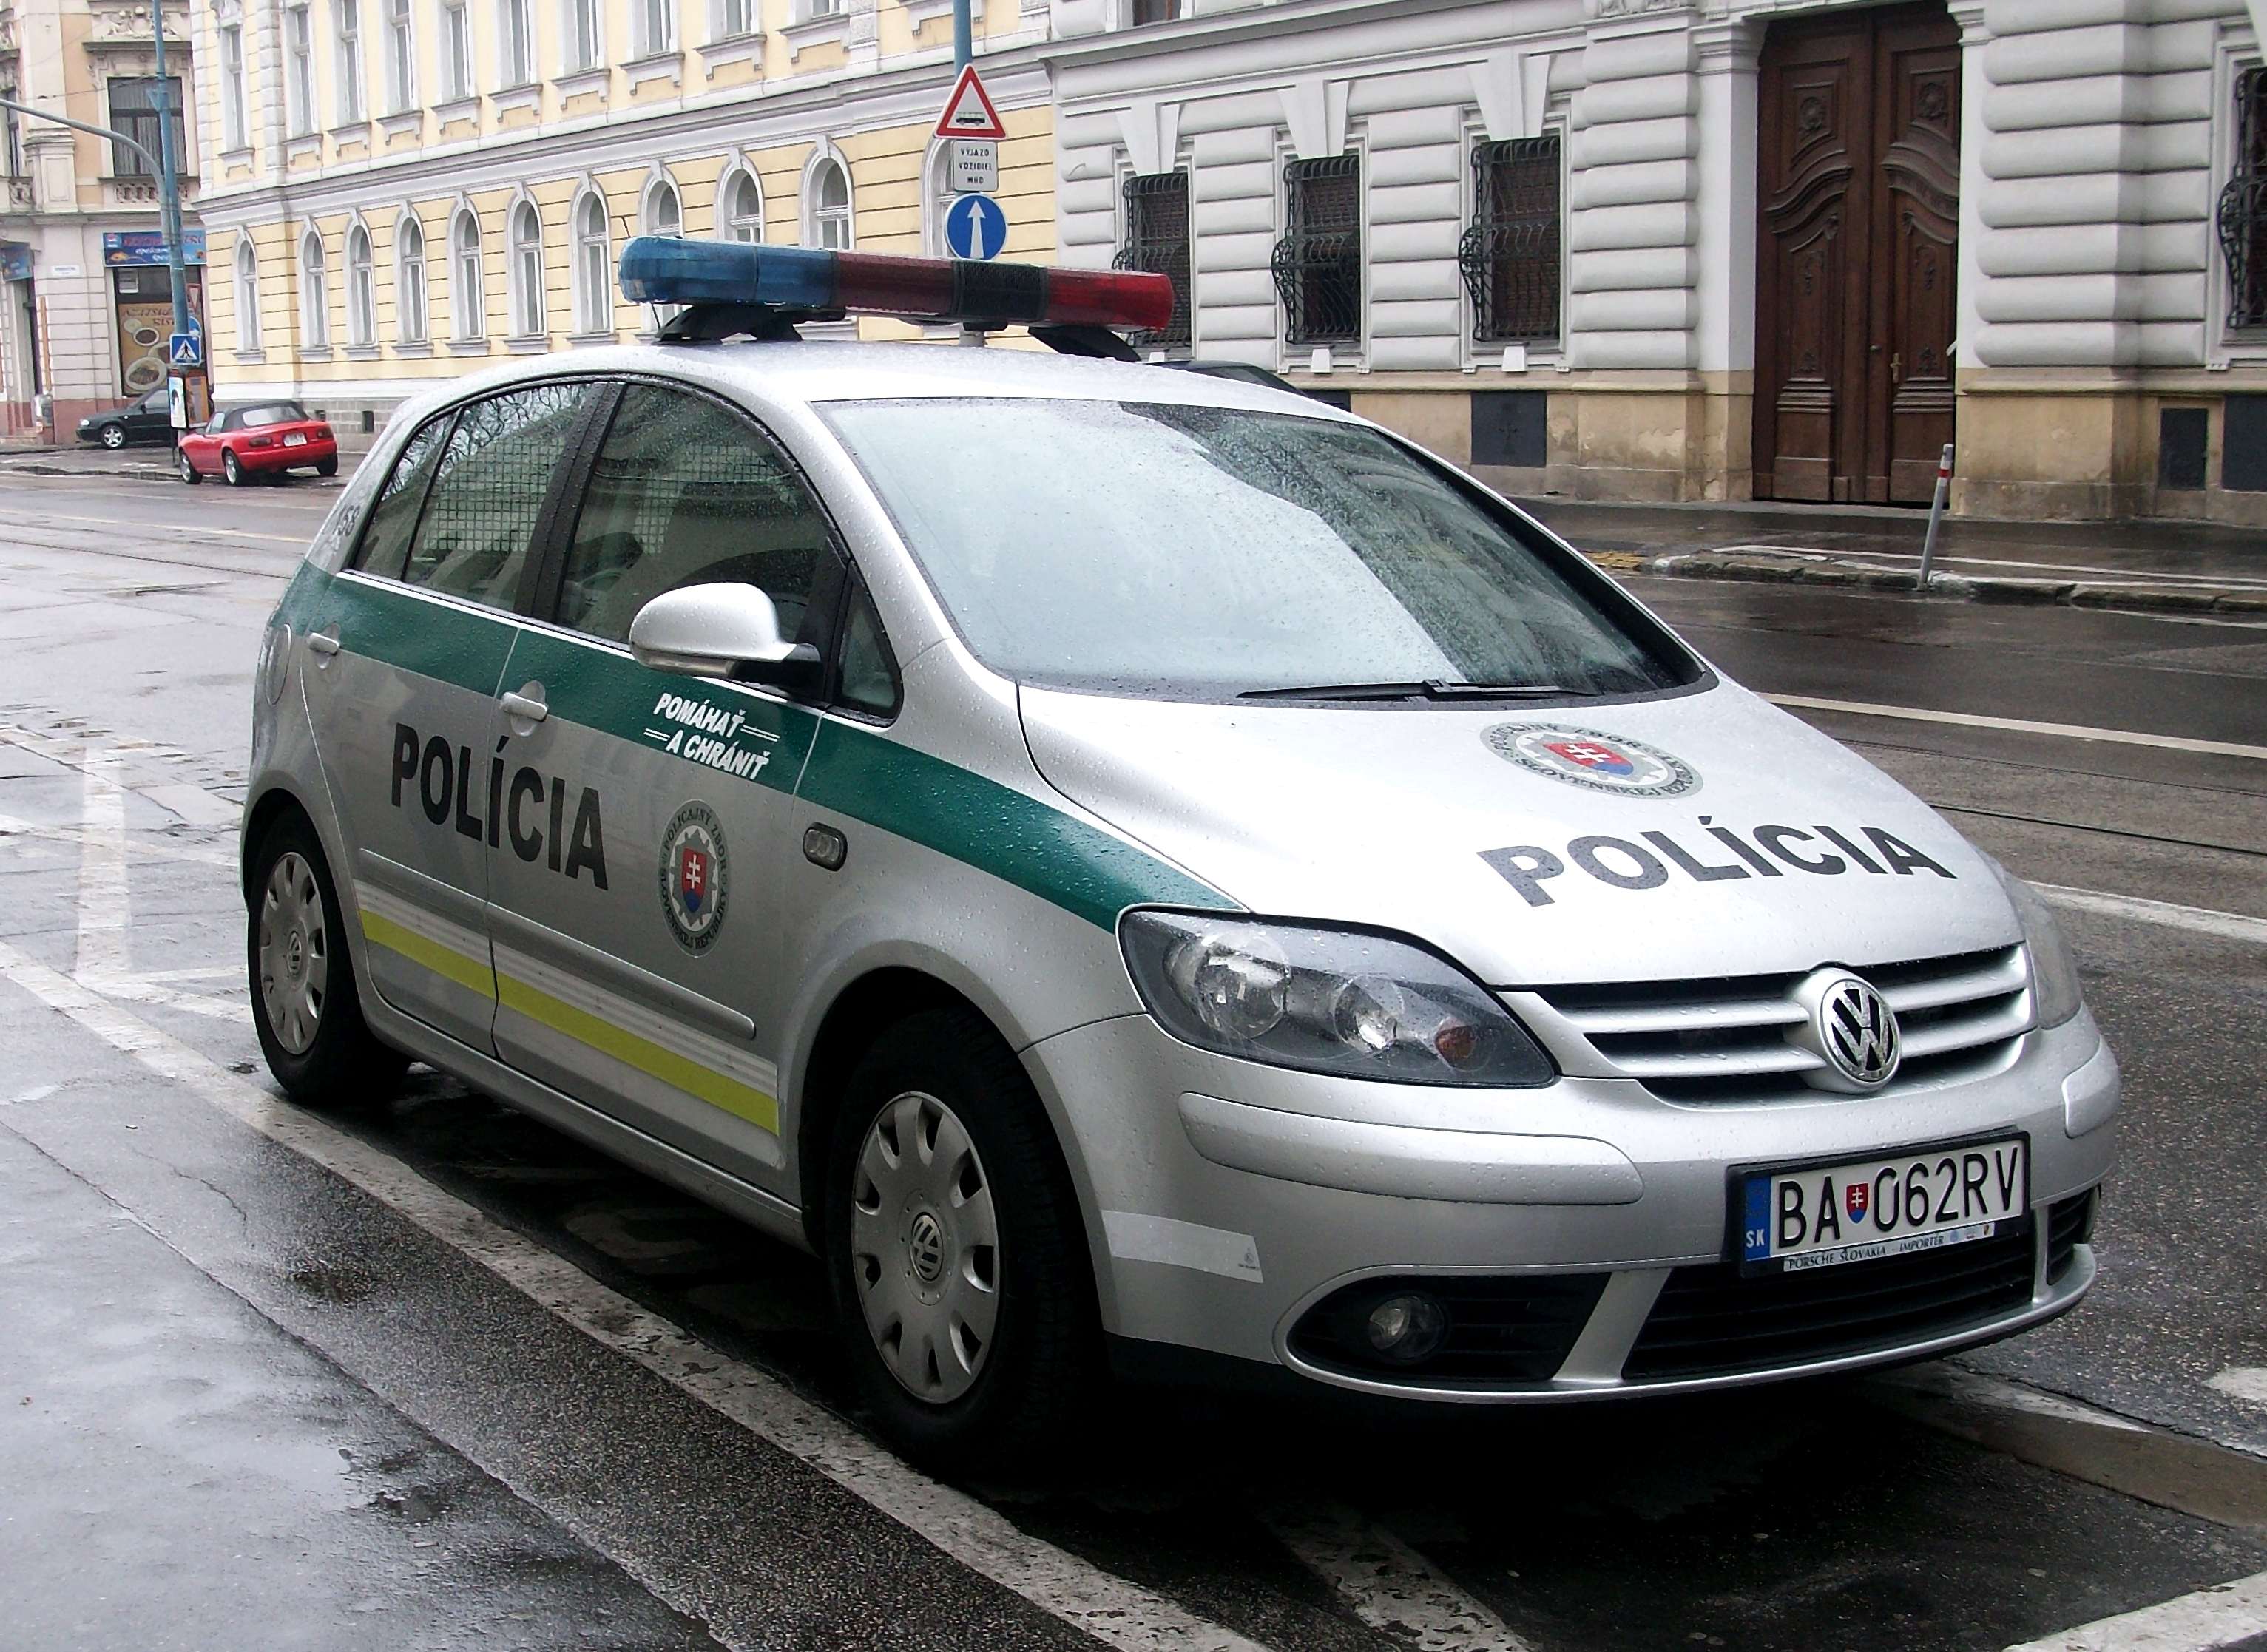 VW Golf Plus Policia, 2012 in Bratislava